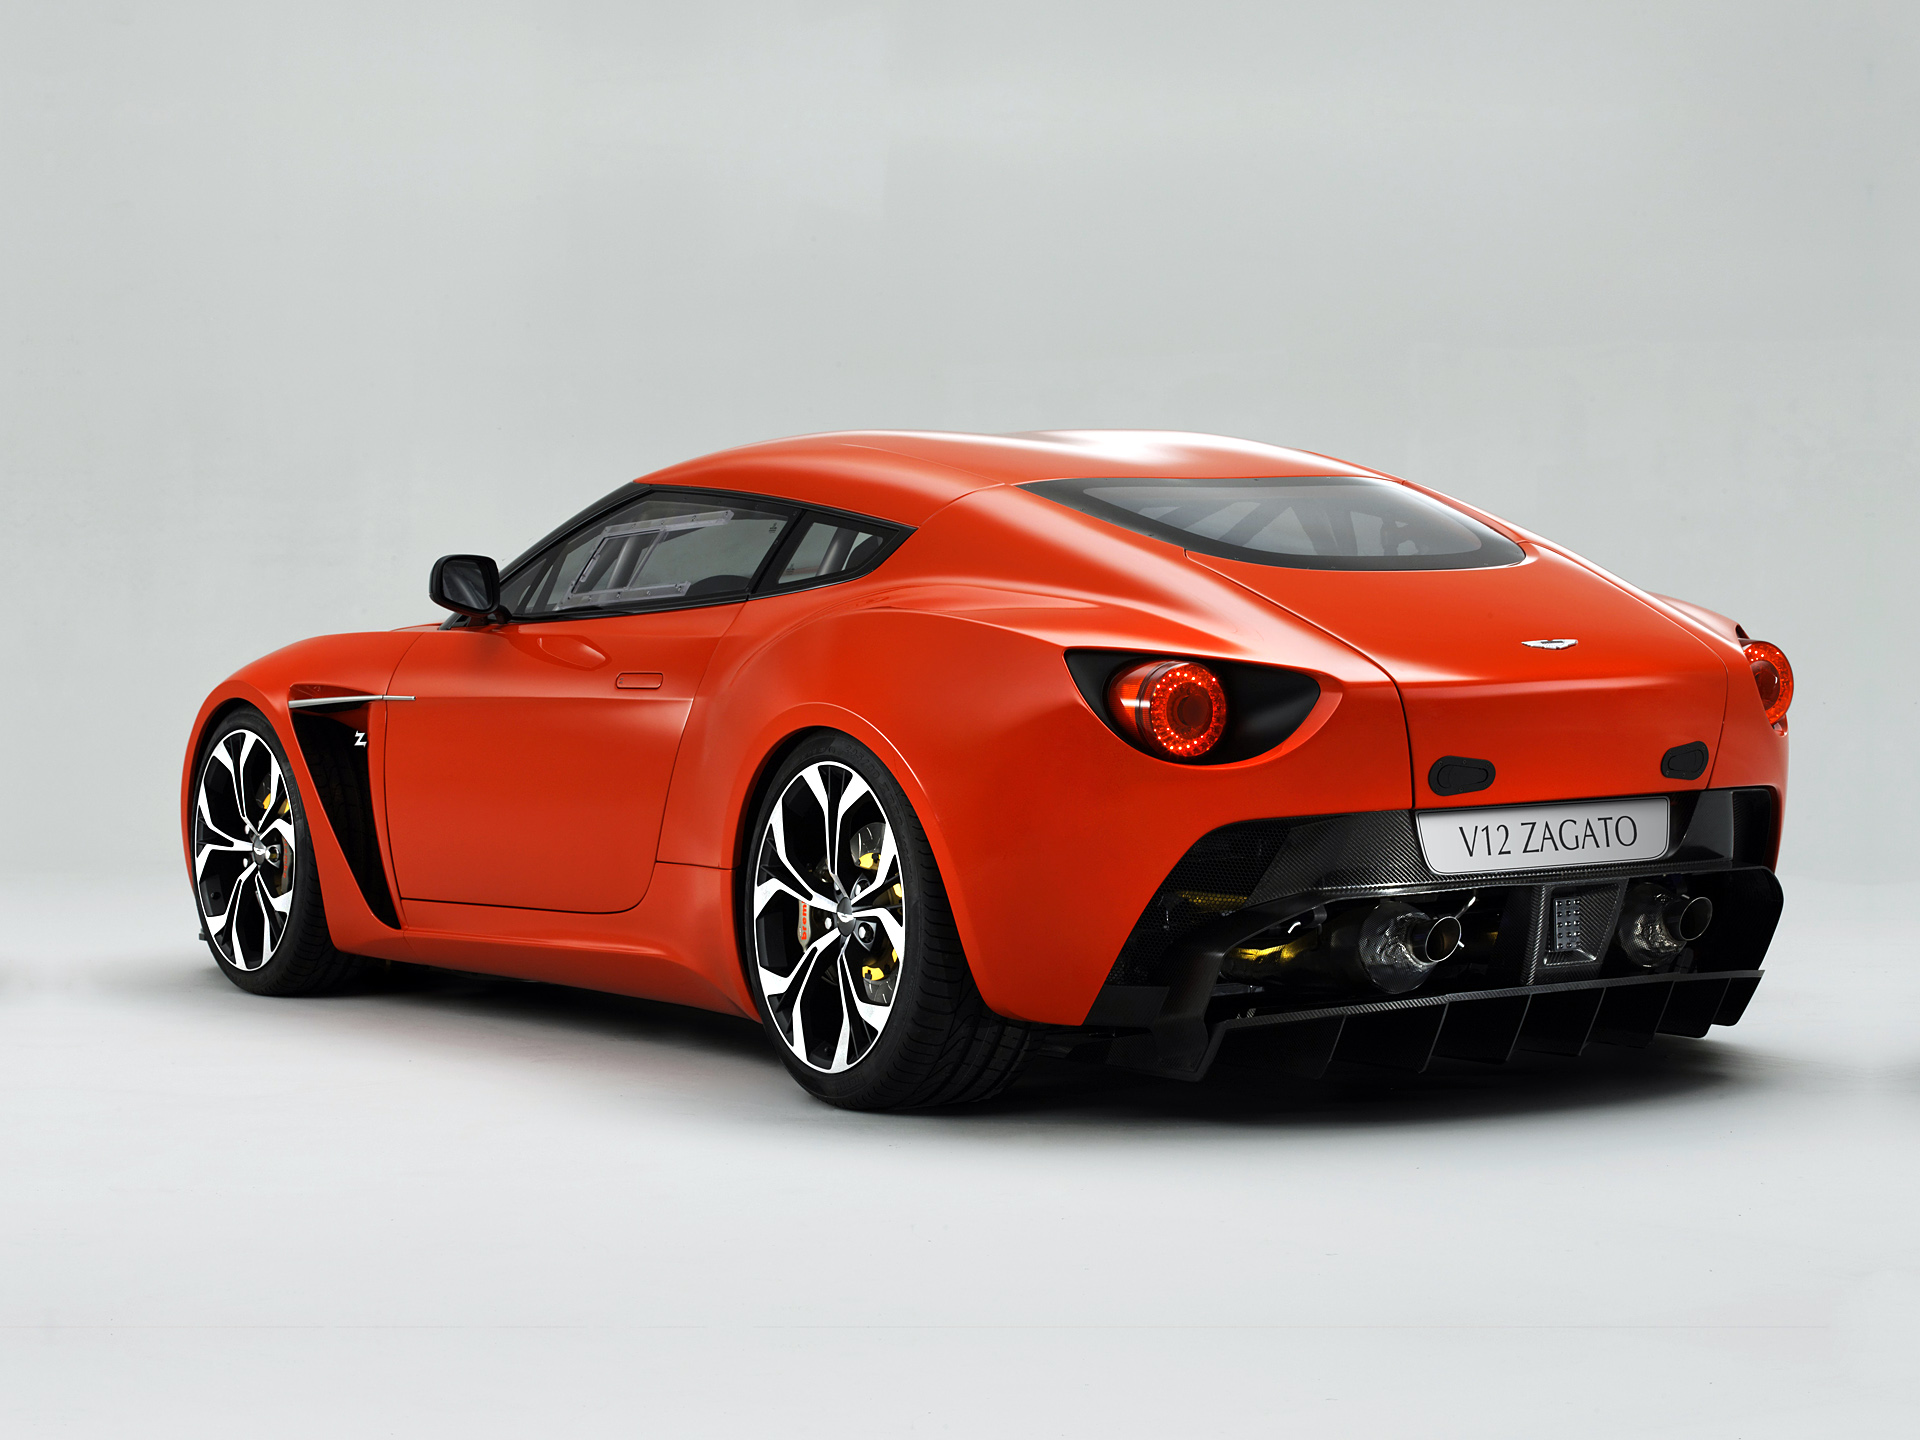 Descargar fondos de escritorio de Aston Martin V12 Zagato HD